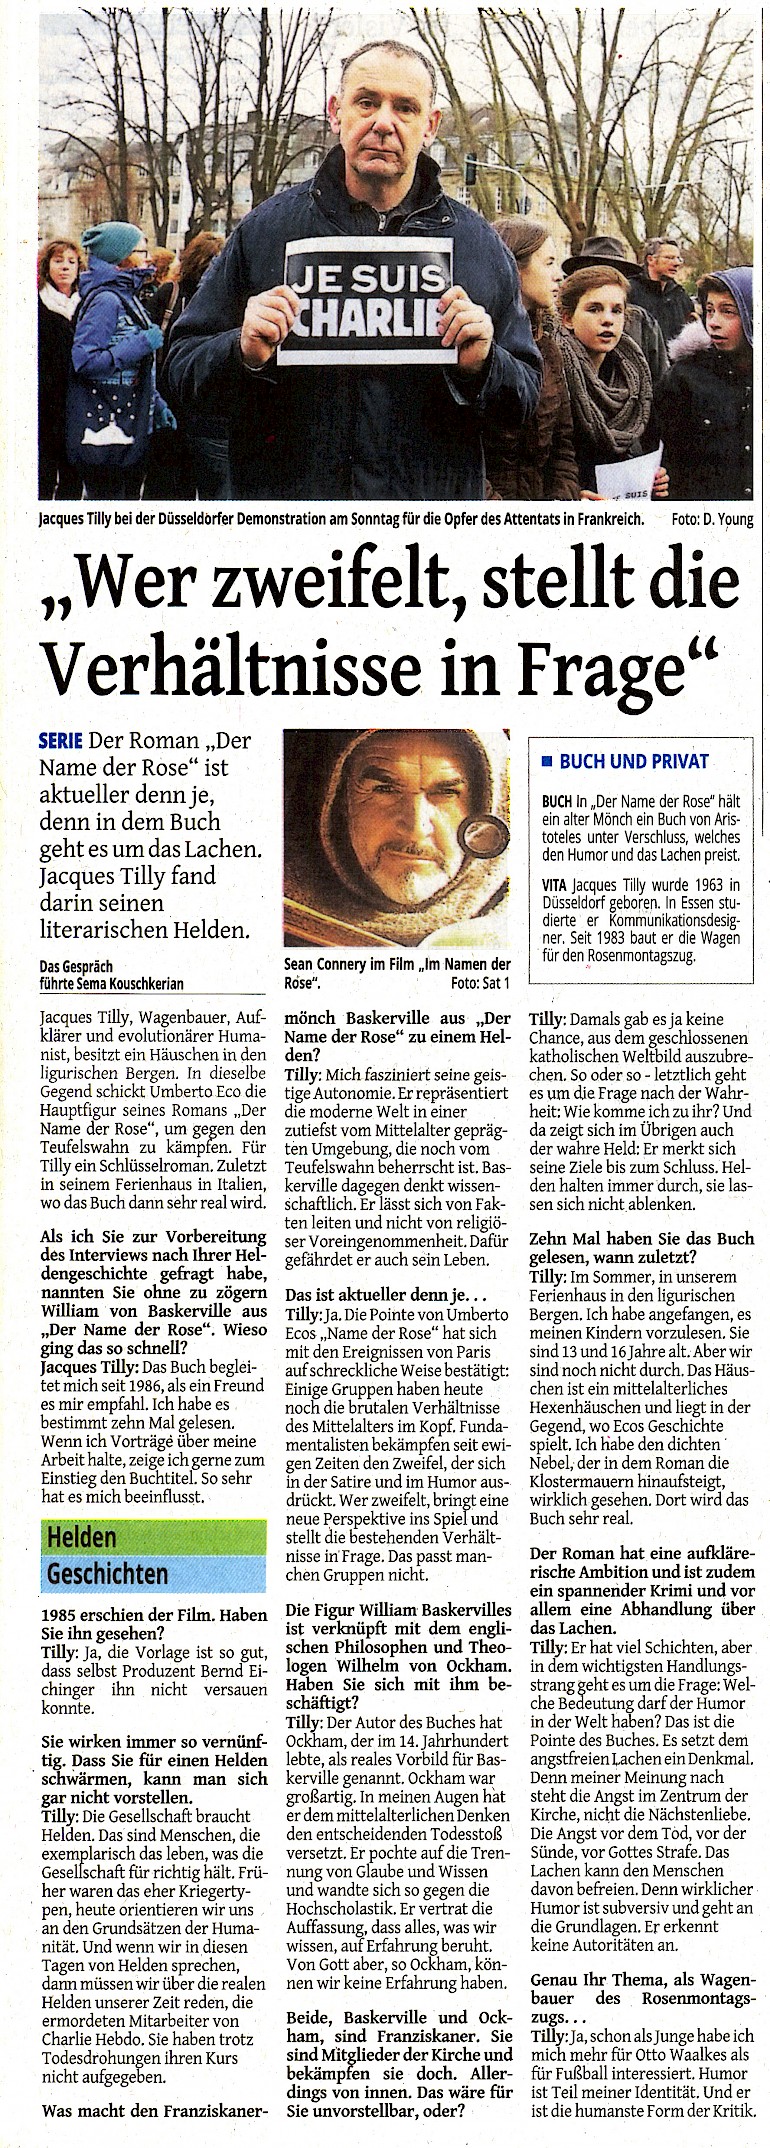 Westdeutsche Zeitung, 13.1.2015 Artikel im Wortlaut auf WZ newsline [http://www.wz-newsline.de/lokales/duesseldorf/specials/heldengeschichten/jacques-tilly-wer-zweifelt-stellt-die-verhaeltnisse-in-frage-1.1835243]